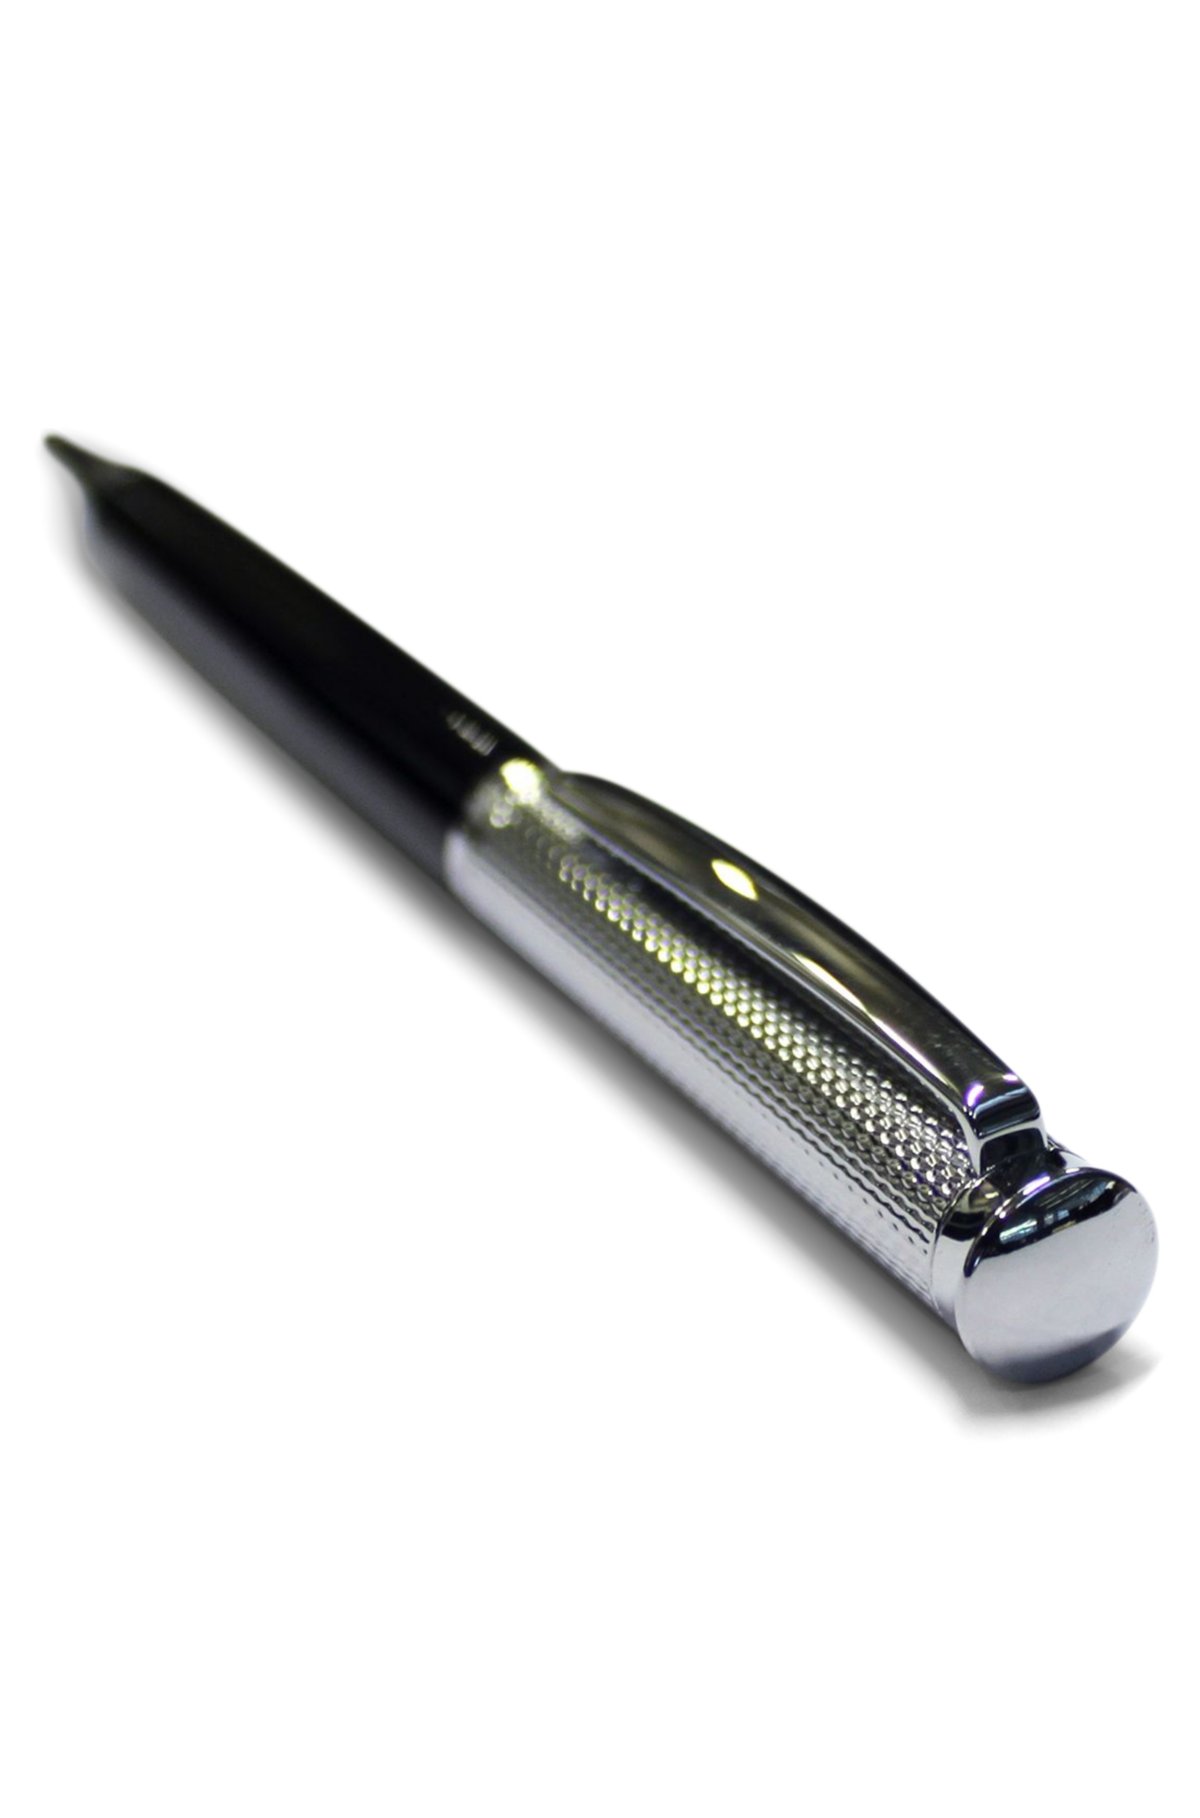 Engraved Parker IM Black Lacquer Retractable Ballpoint Pen Chrome